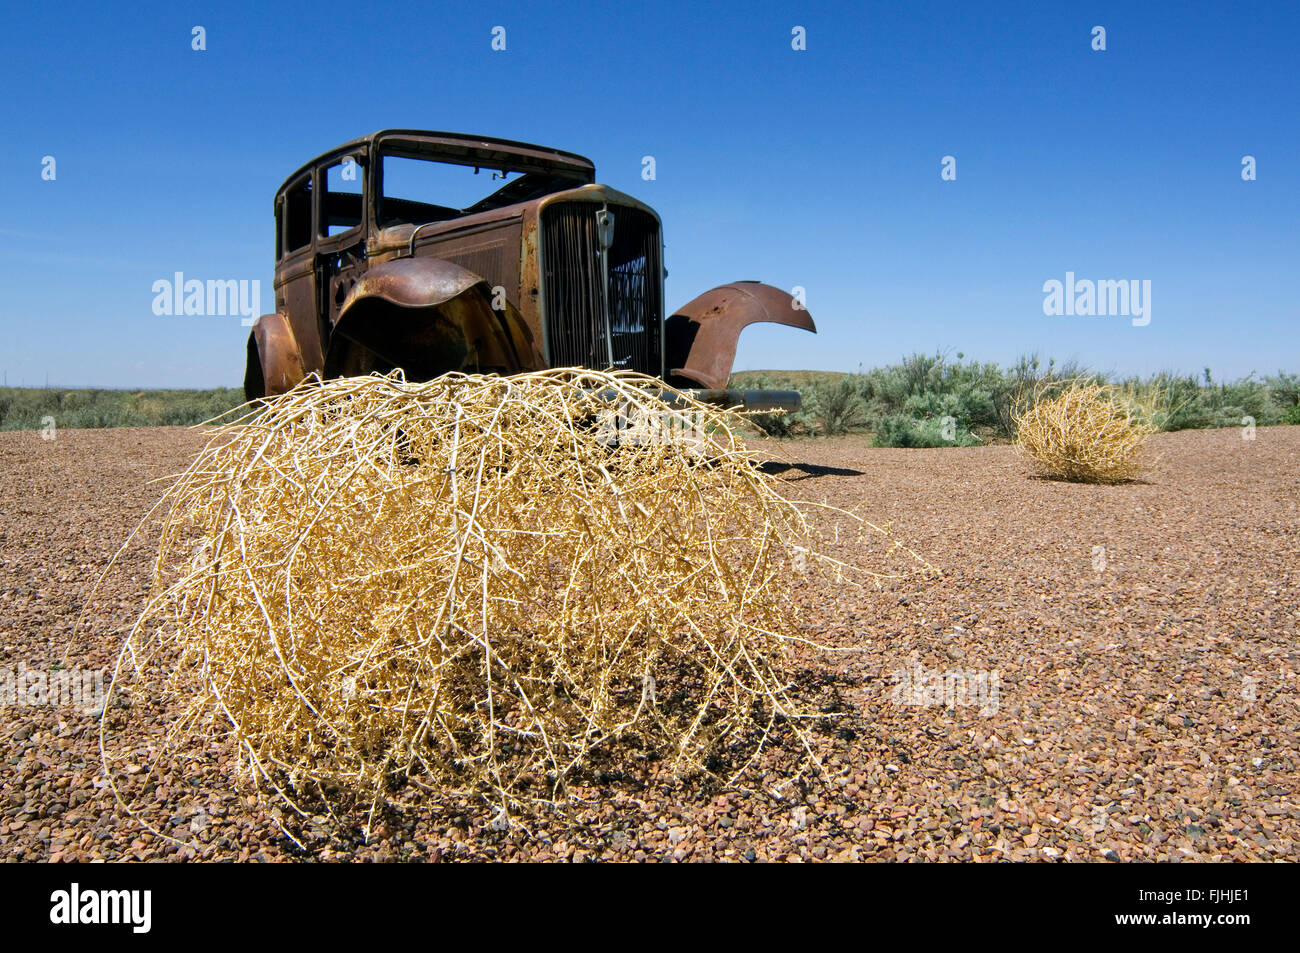 Alte rostige Auto und stachelige Distel Russisch / Tumbleweed (Kali Tragus / Salsola Tragus / Salsola Iberica) entlang der Route 66, Arizona Stockfoto